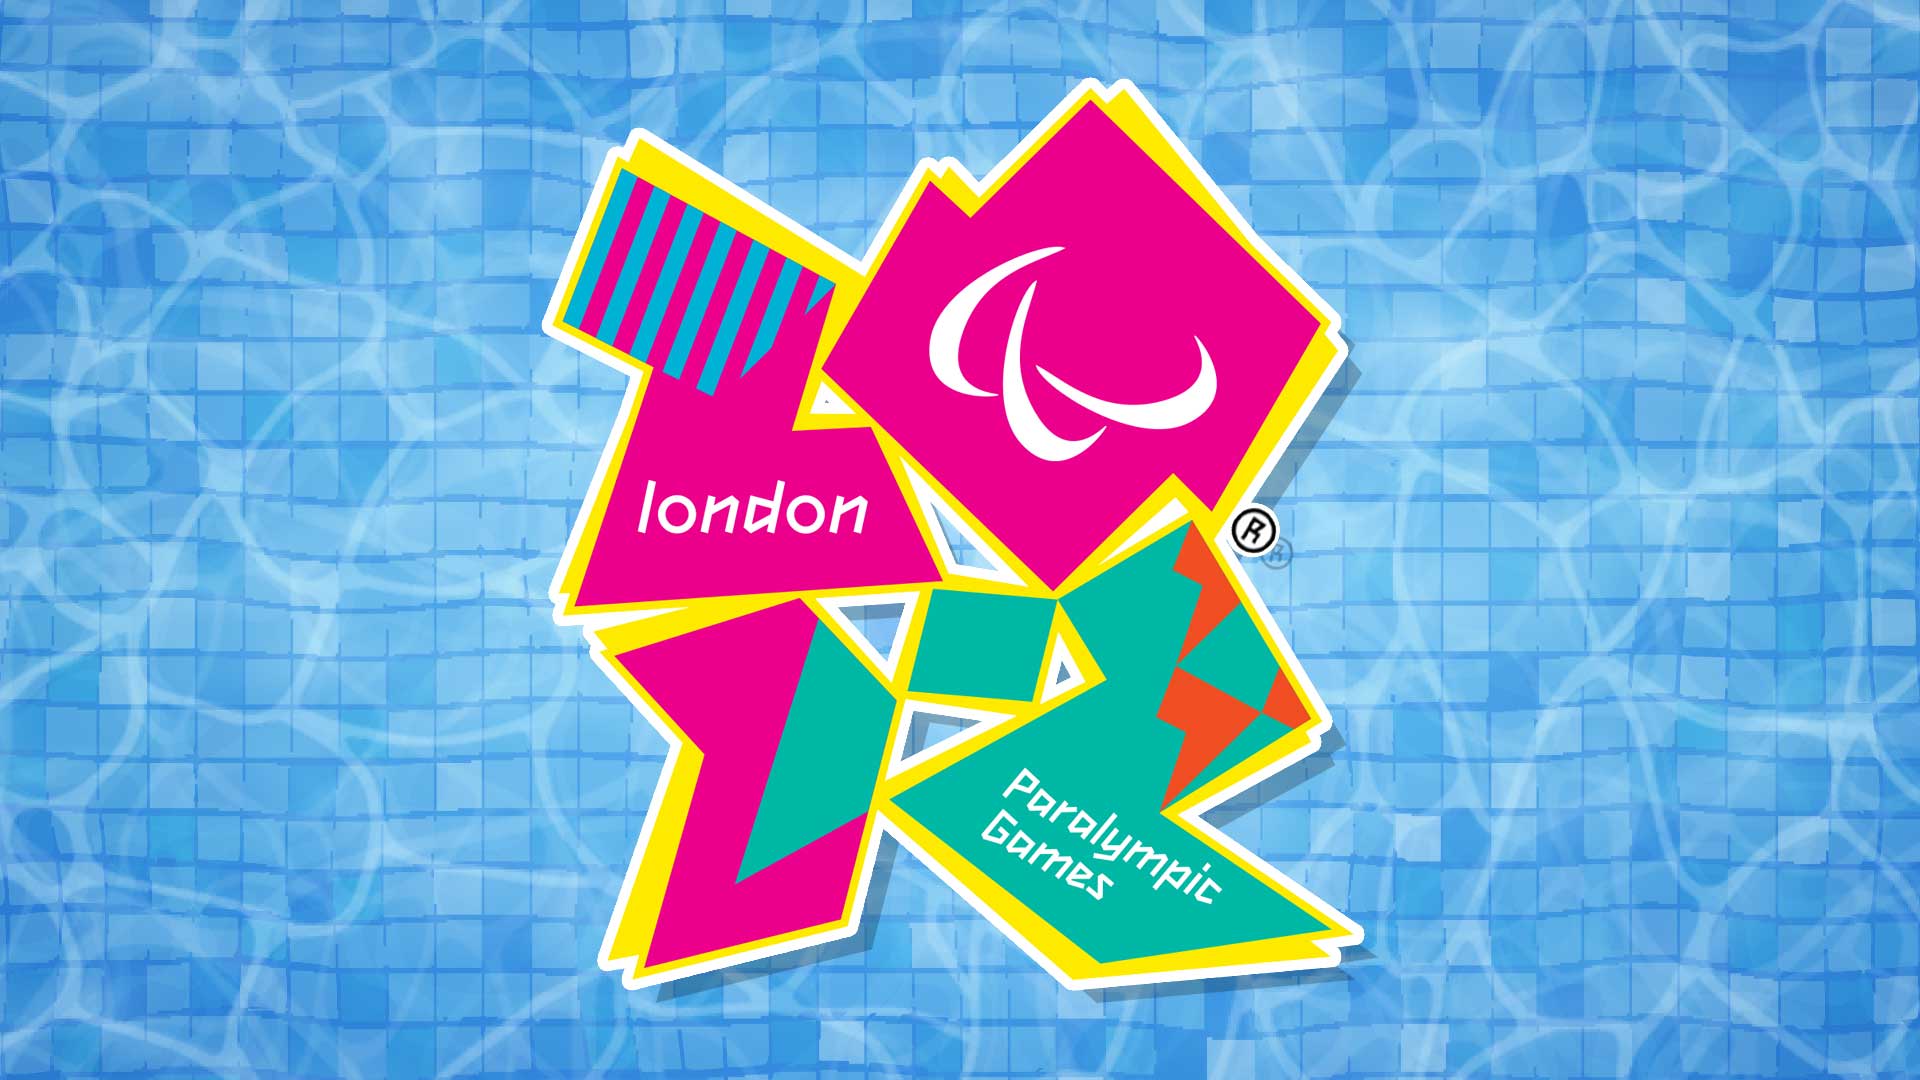 The 2012 Paralympics logo